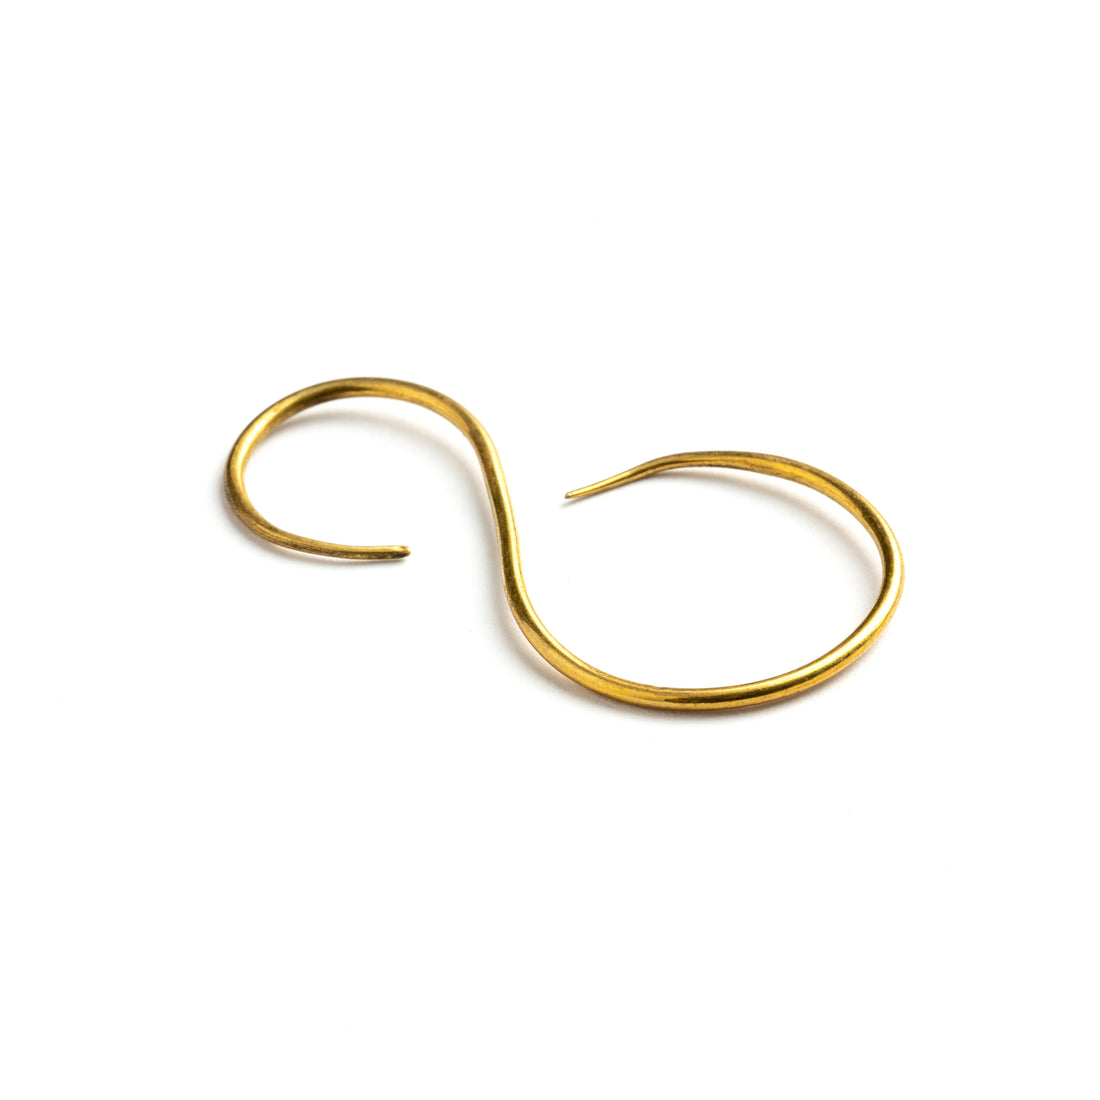 single swan shaped golden brass wire earrings right side view